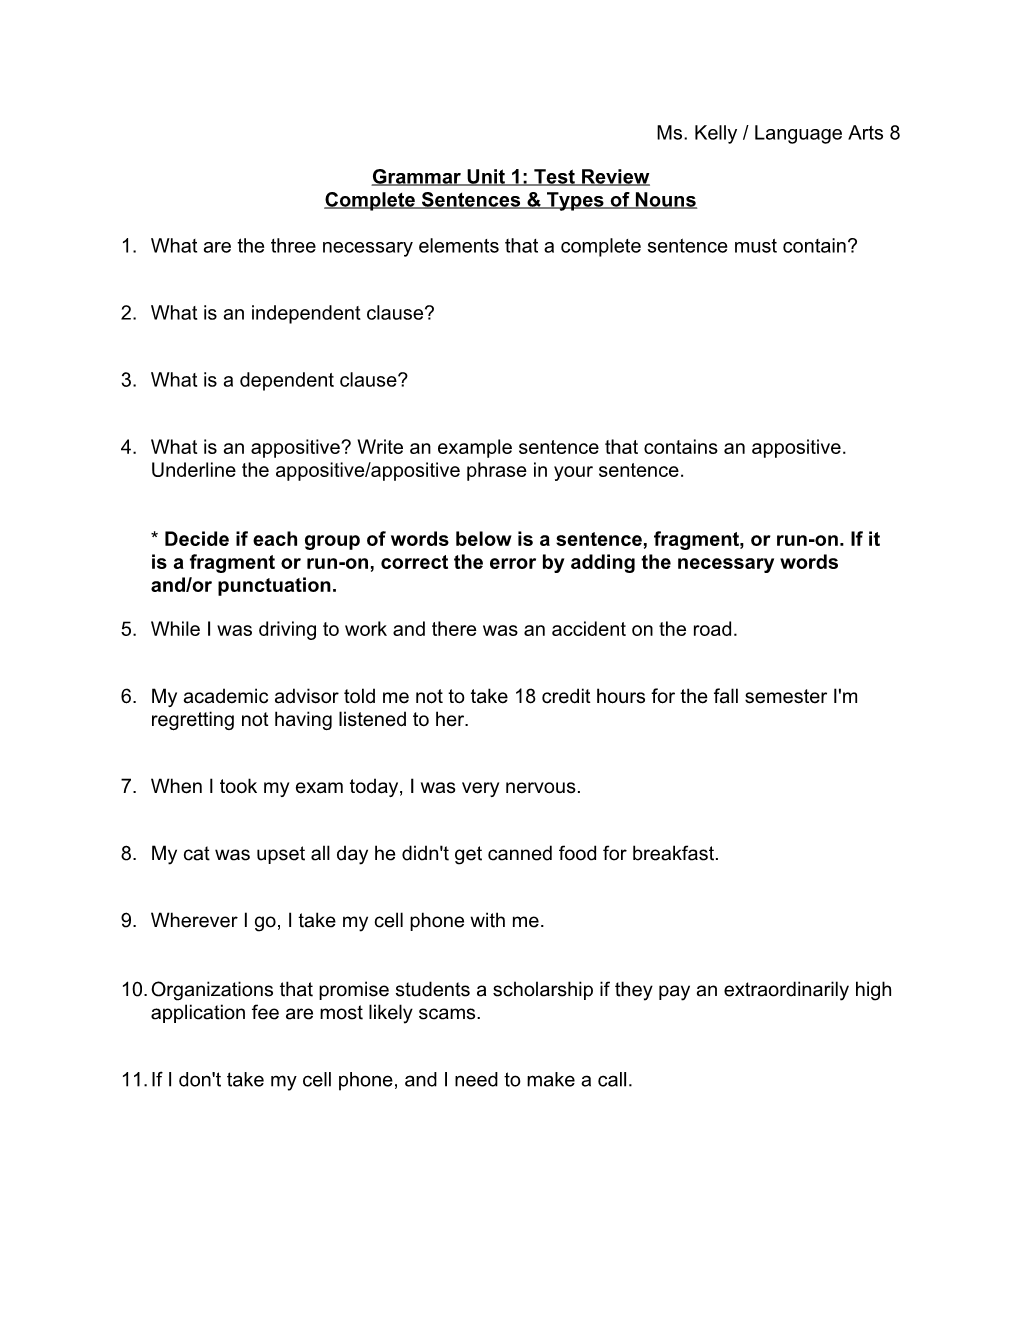 Grammar Unit 1: Test Review Complete Sentences & Types of Nouns